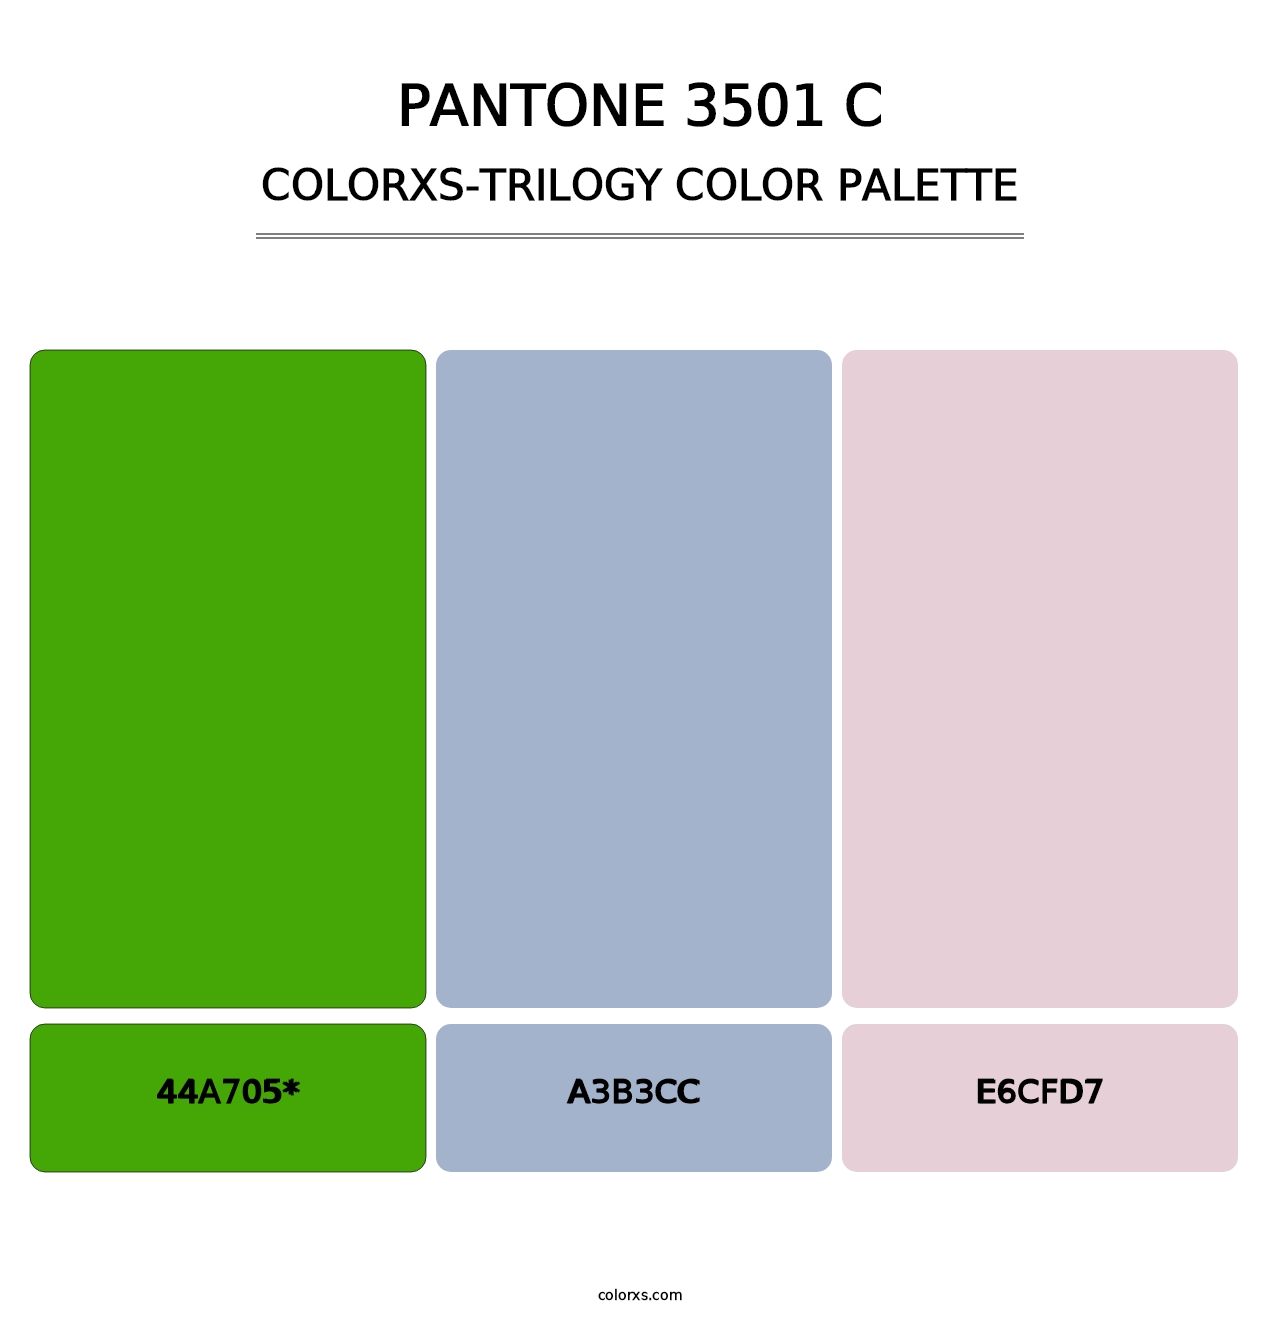 PANTONE 3501 C - Colorxs Trilogy Palette